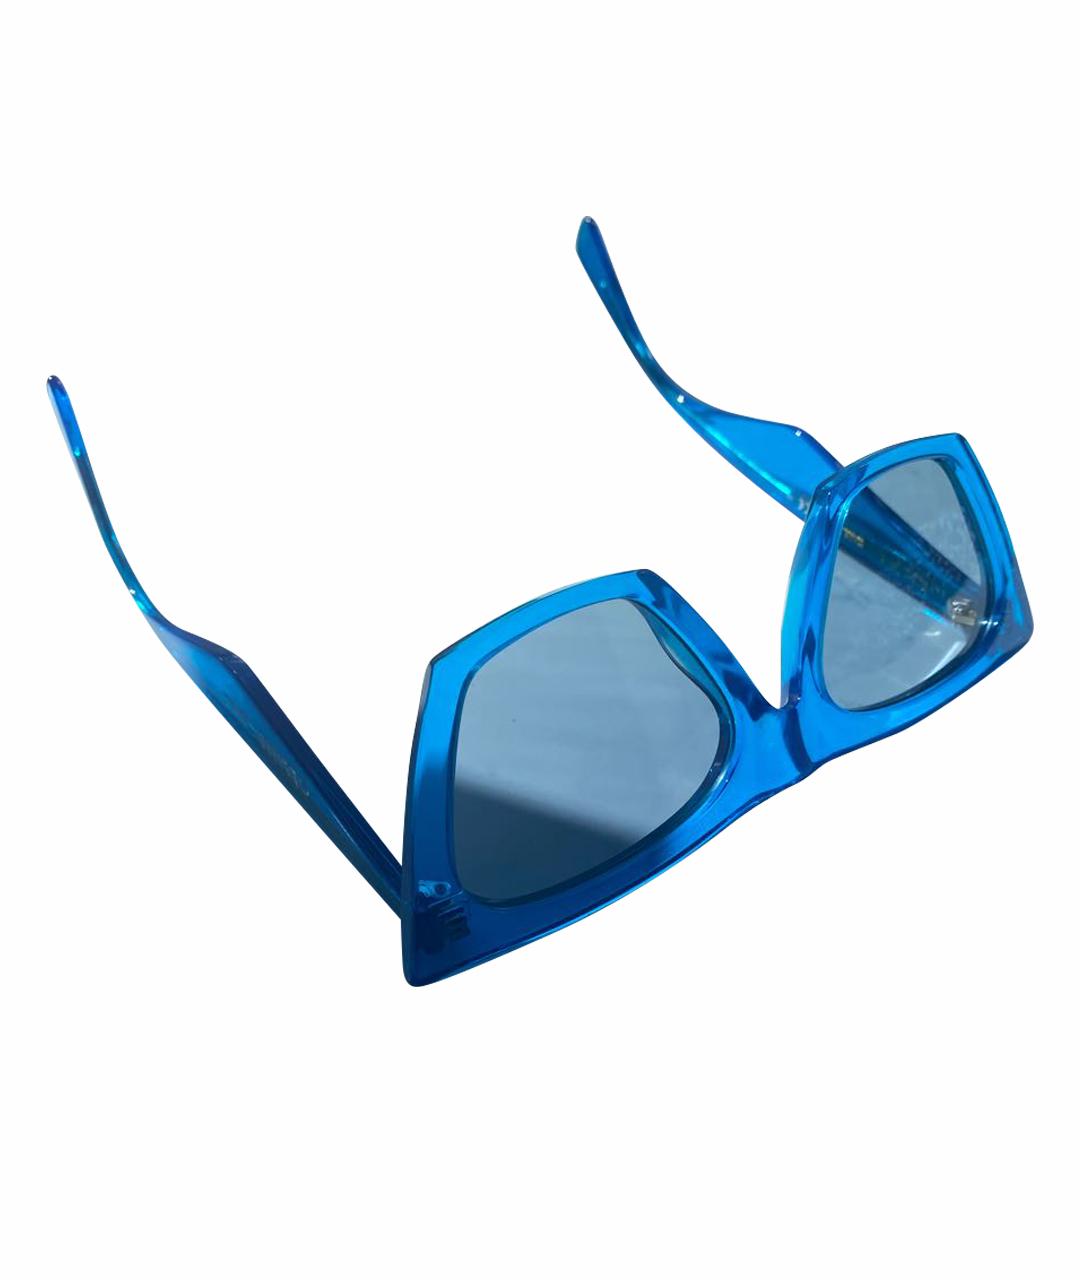 CELINE PRE-OWNED Голубые пластиковые солнцезащитные очки, фото 1